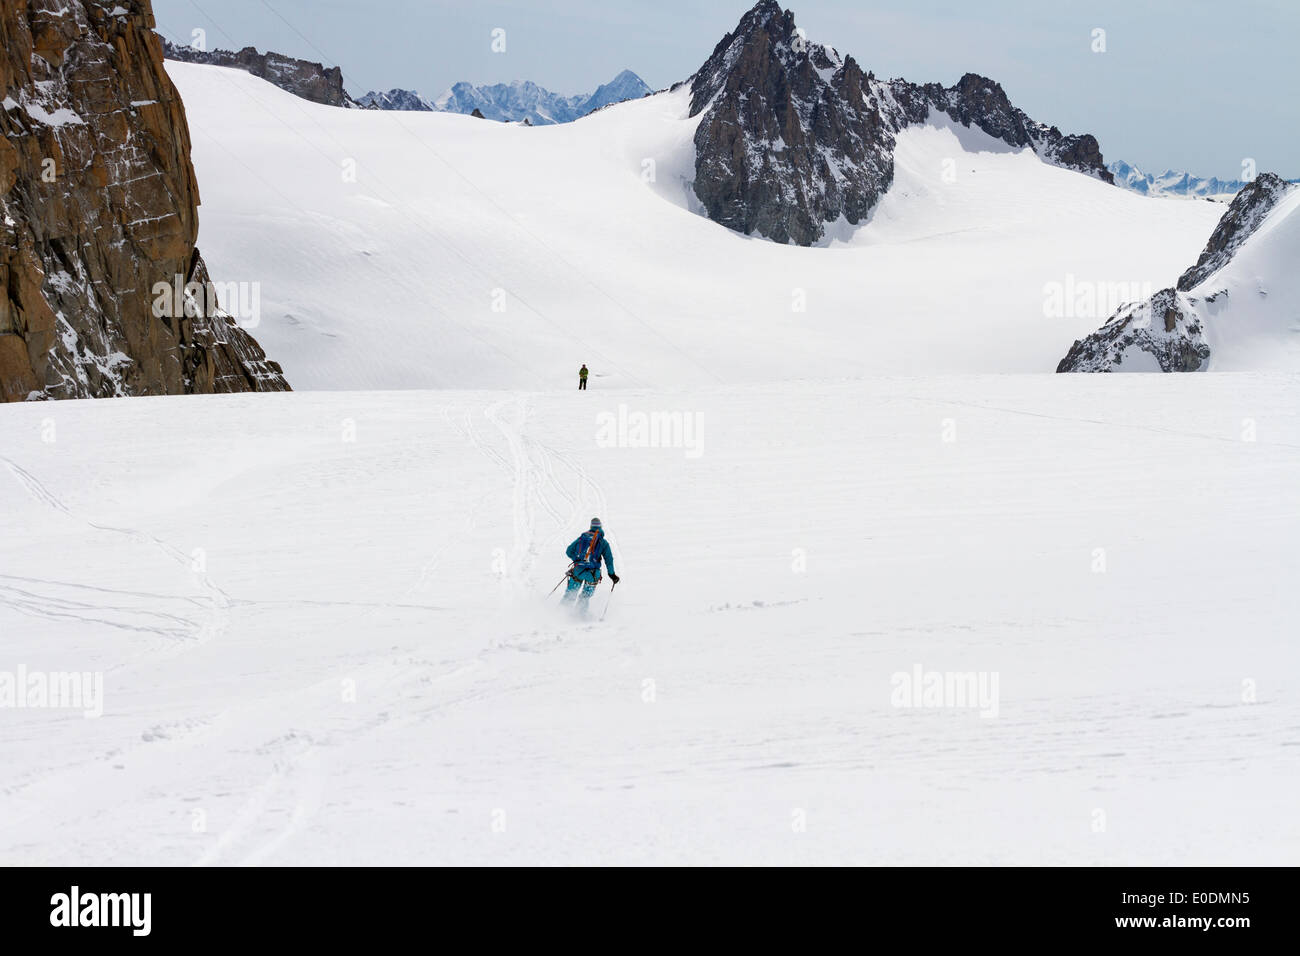 Chamonix Mont Blanc, Frankreich - Skifahrer auf den Glacier de Géante Überschrift hinunter die Vallée Blanche off Piste-Ski-Abfahrt Stockfoto